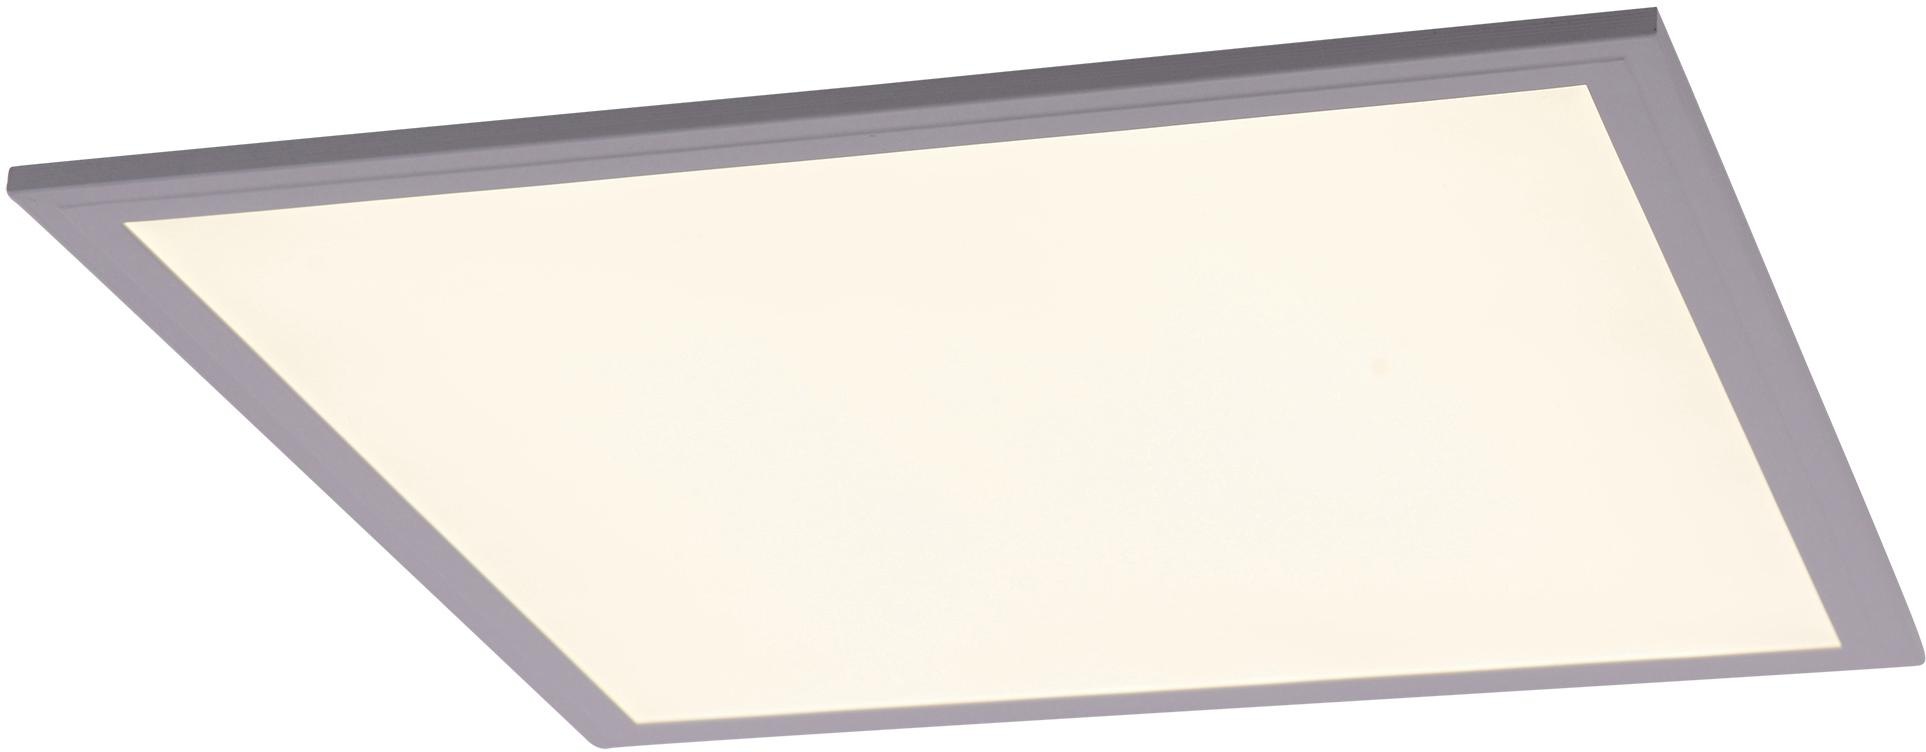 OTTO näve LED online Treiber, F, LED bei kaufen incl. weiß Aufbaupanel, Energieeffizienz: Panel »PANEL«,